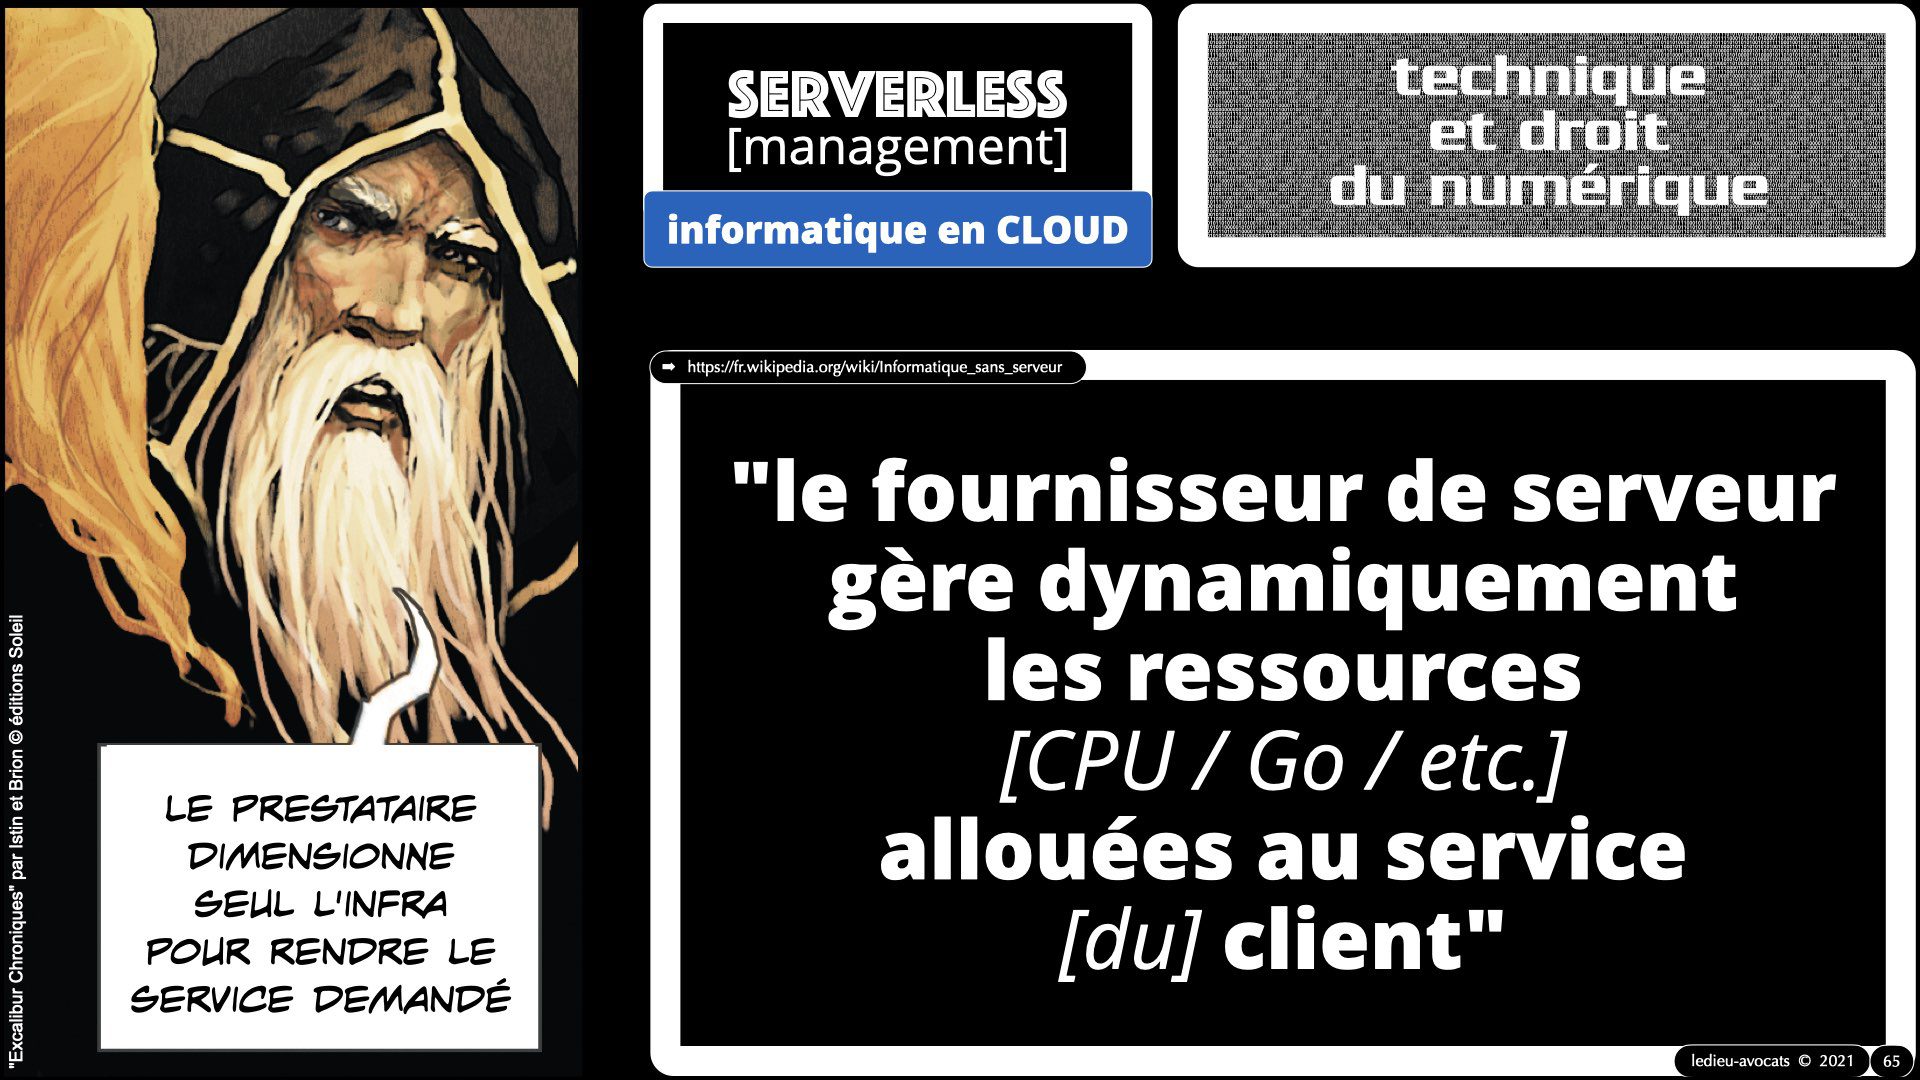 343 service LOGICIEL SaaS Software-as-a-Service cloud computing © Ledieu-Avocats technique droit numerique 30-08-2021.065